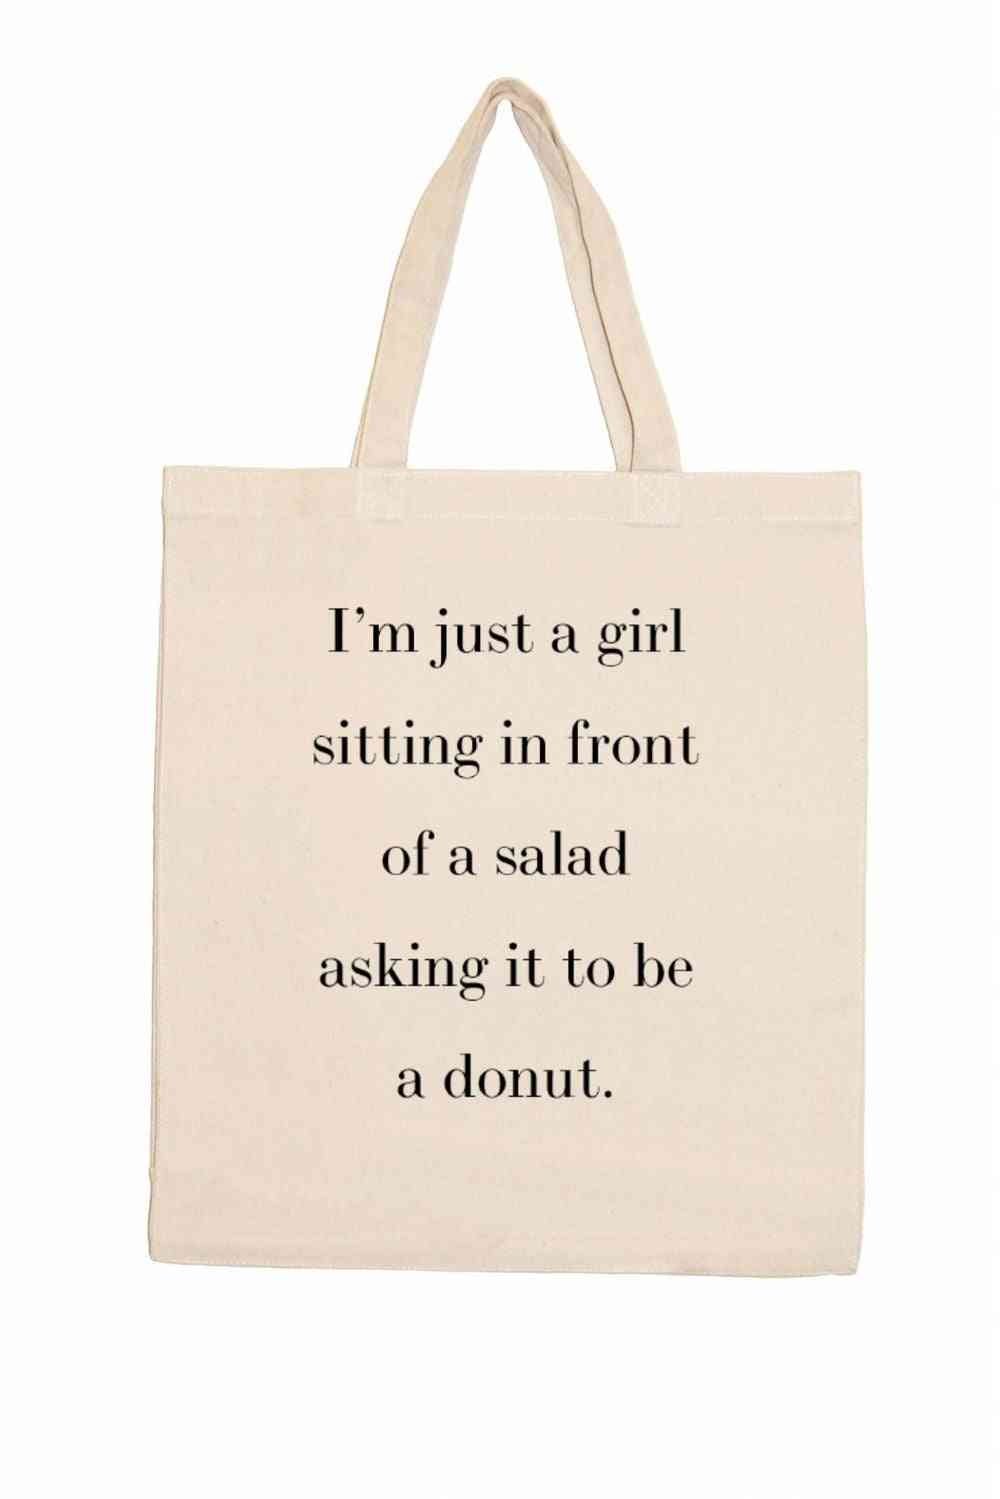 Sono solo una ragazza seduta davanti a un'insalata che chiede che sia una ciambella.